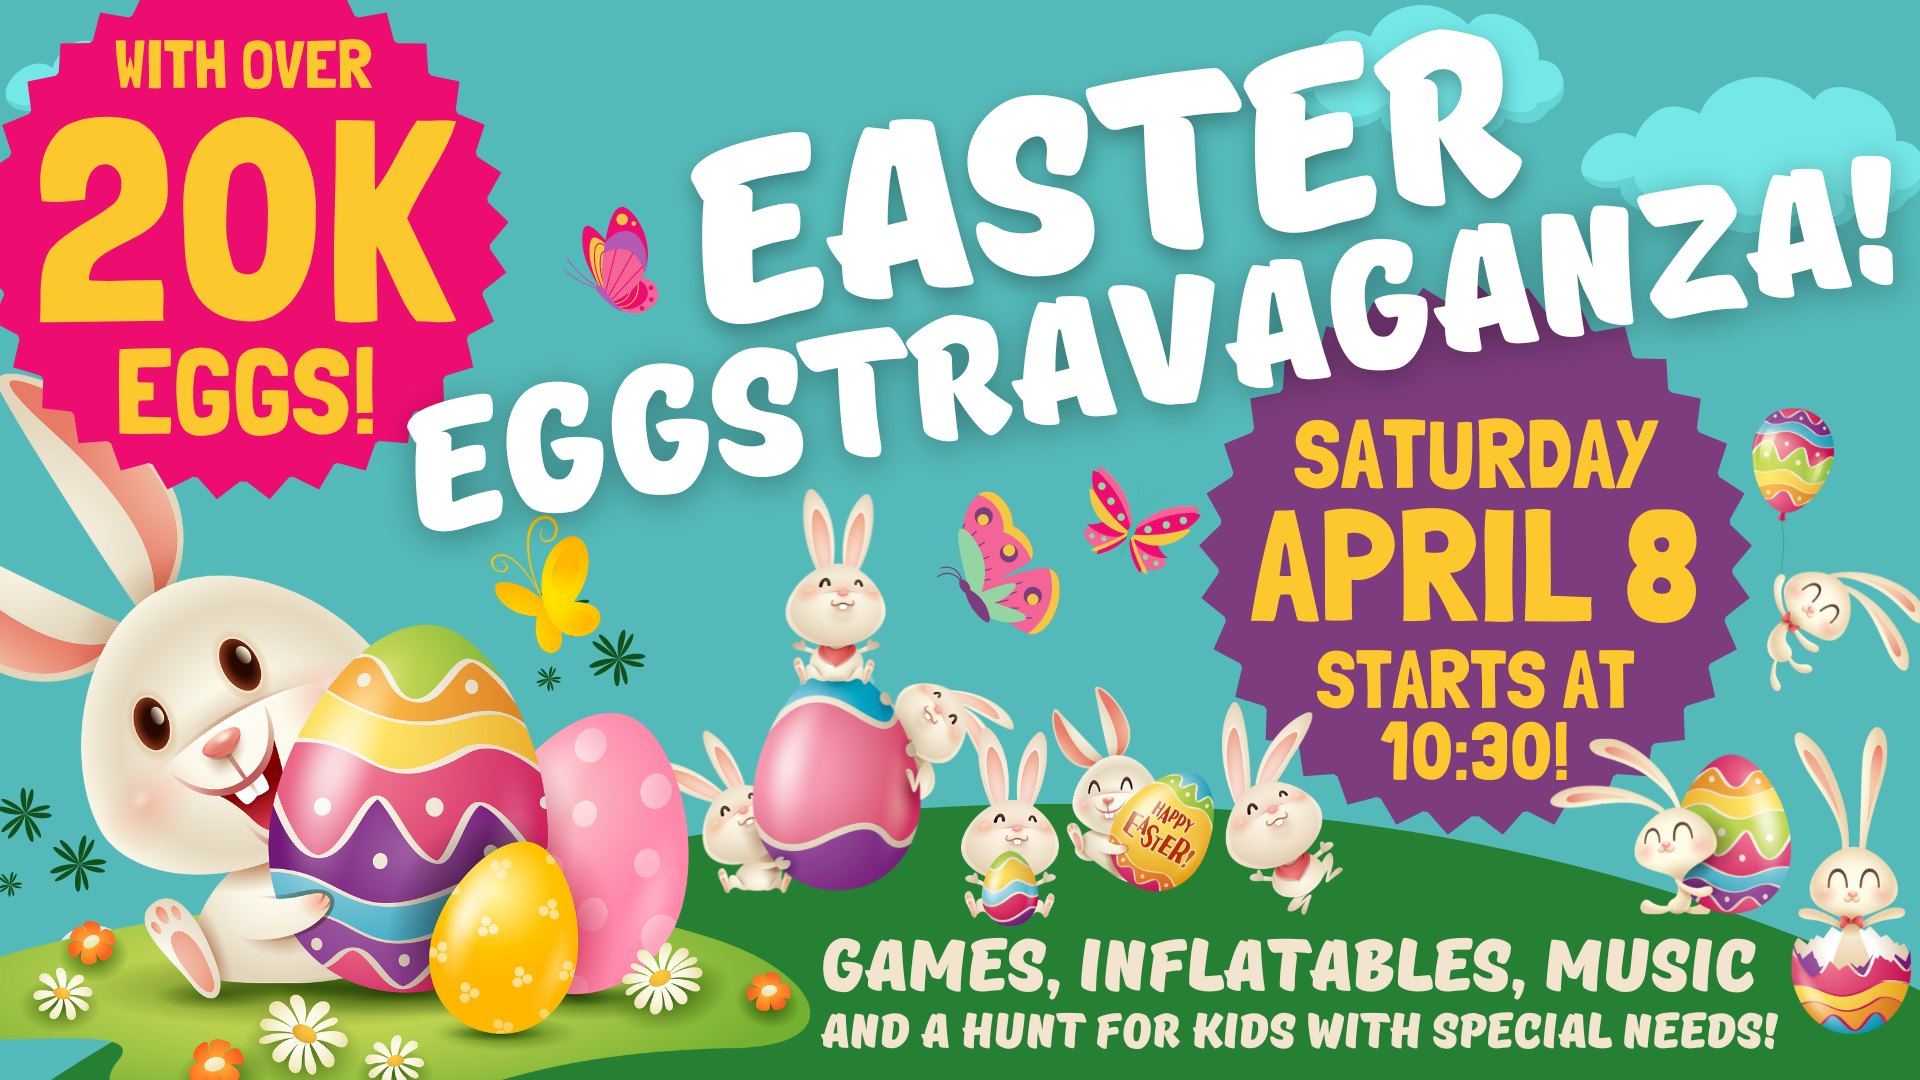 Easter Eggstravaganza at FUMC